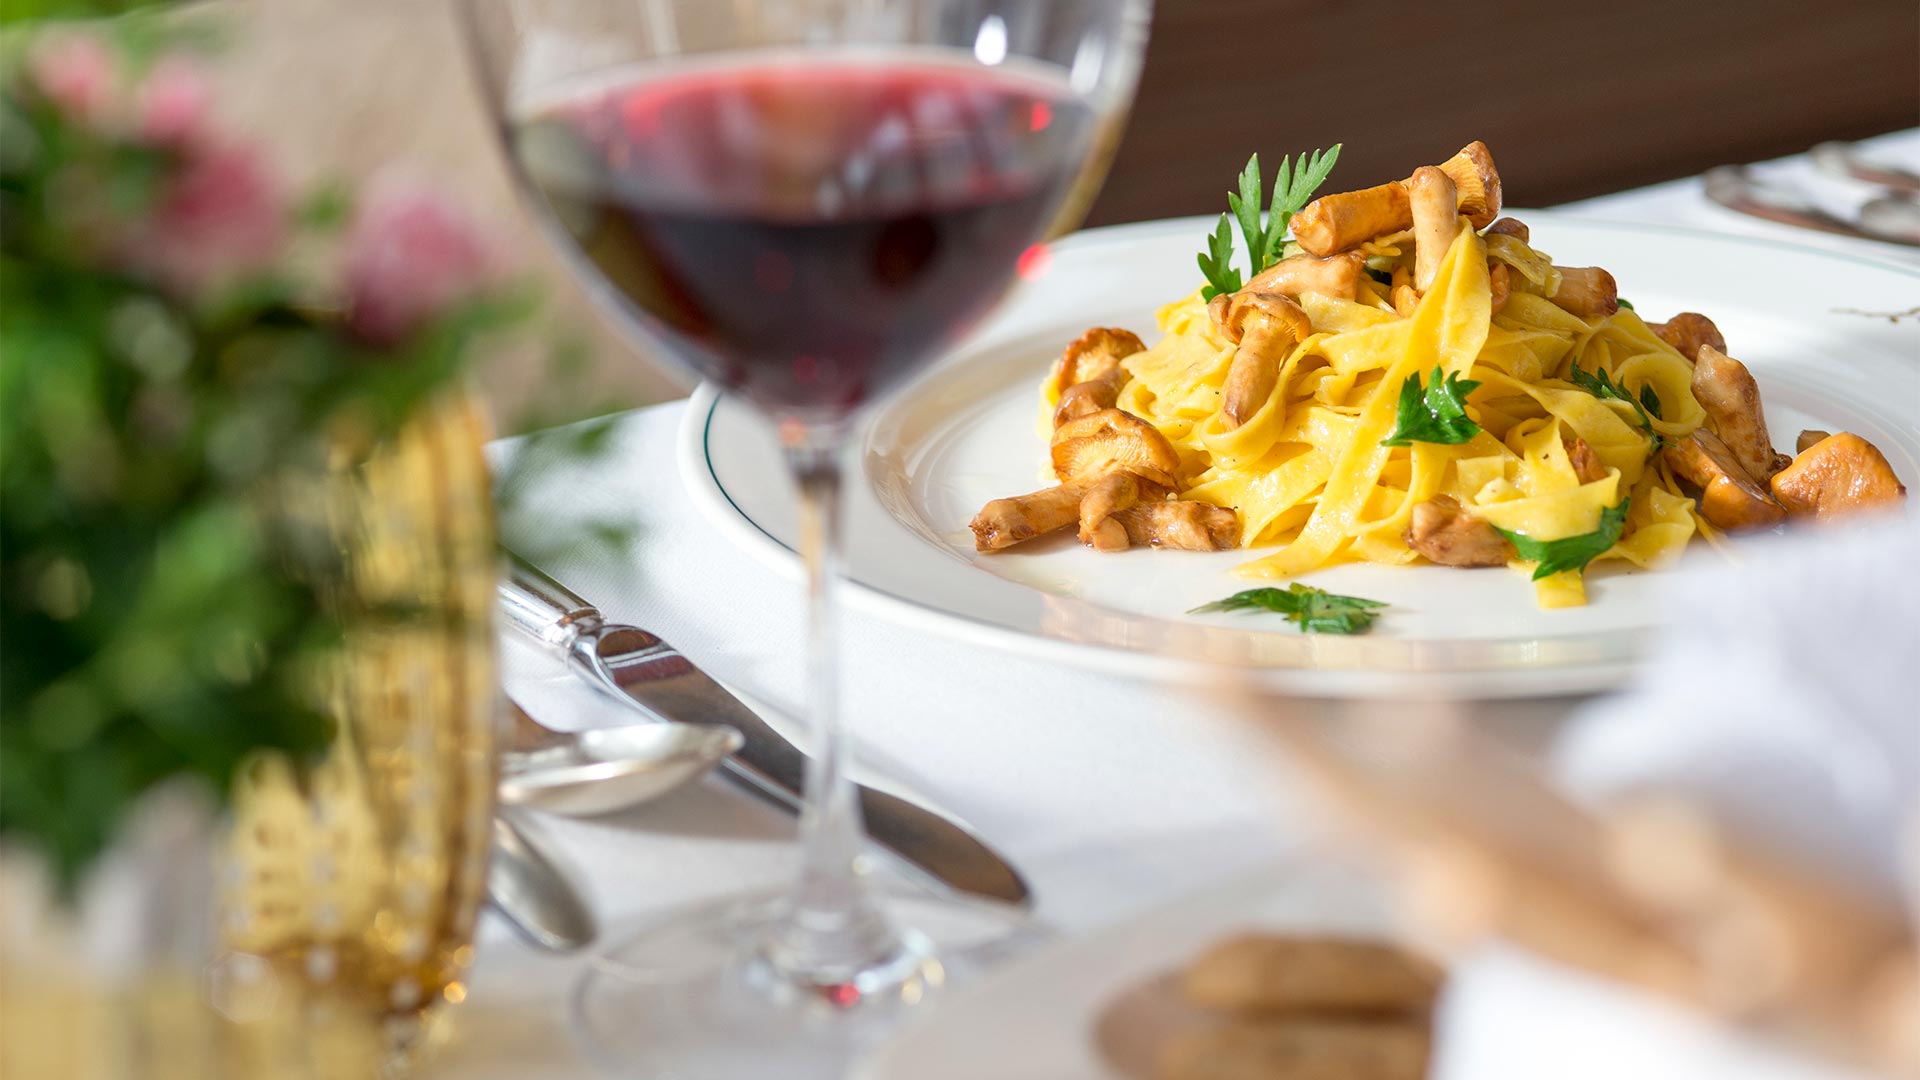 Sul tavolo di un ristorante con la tovaglia bianca è poggiato un piatto di tagliatelle al ragù, servito con un bicchiere di vino rosso.